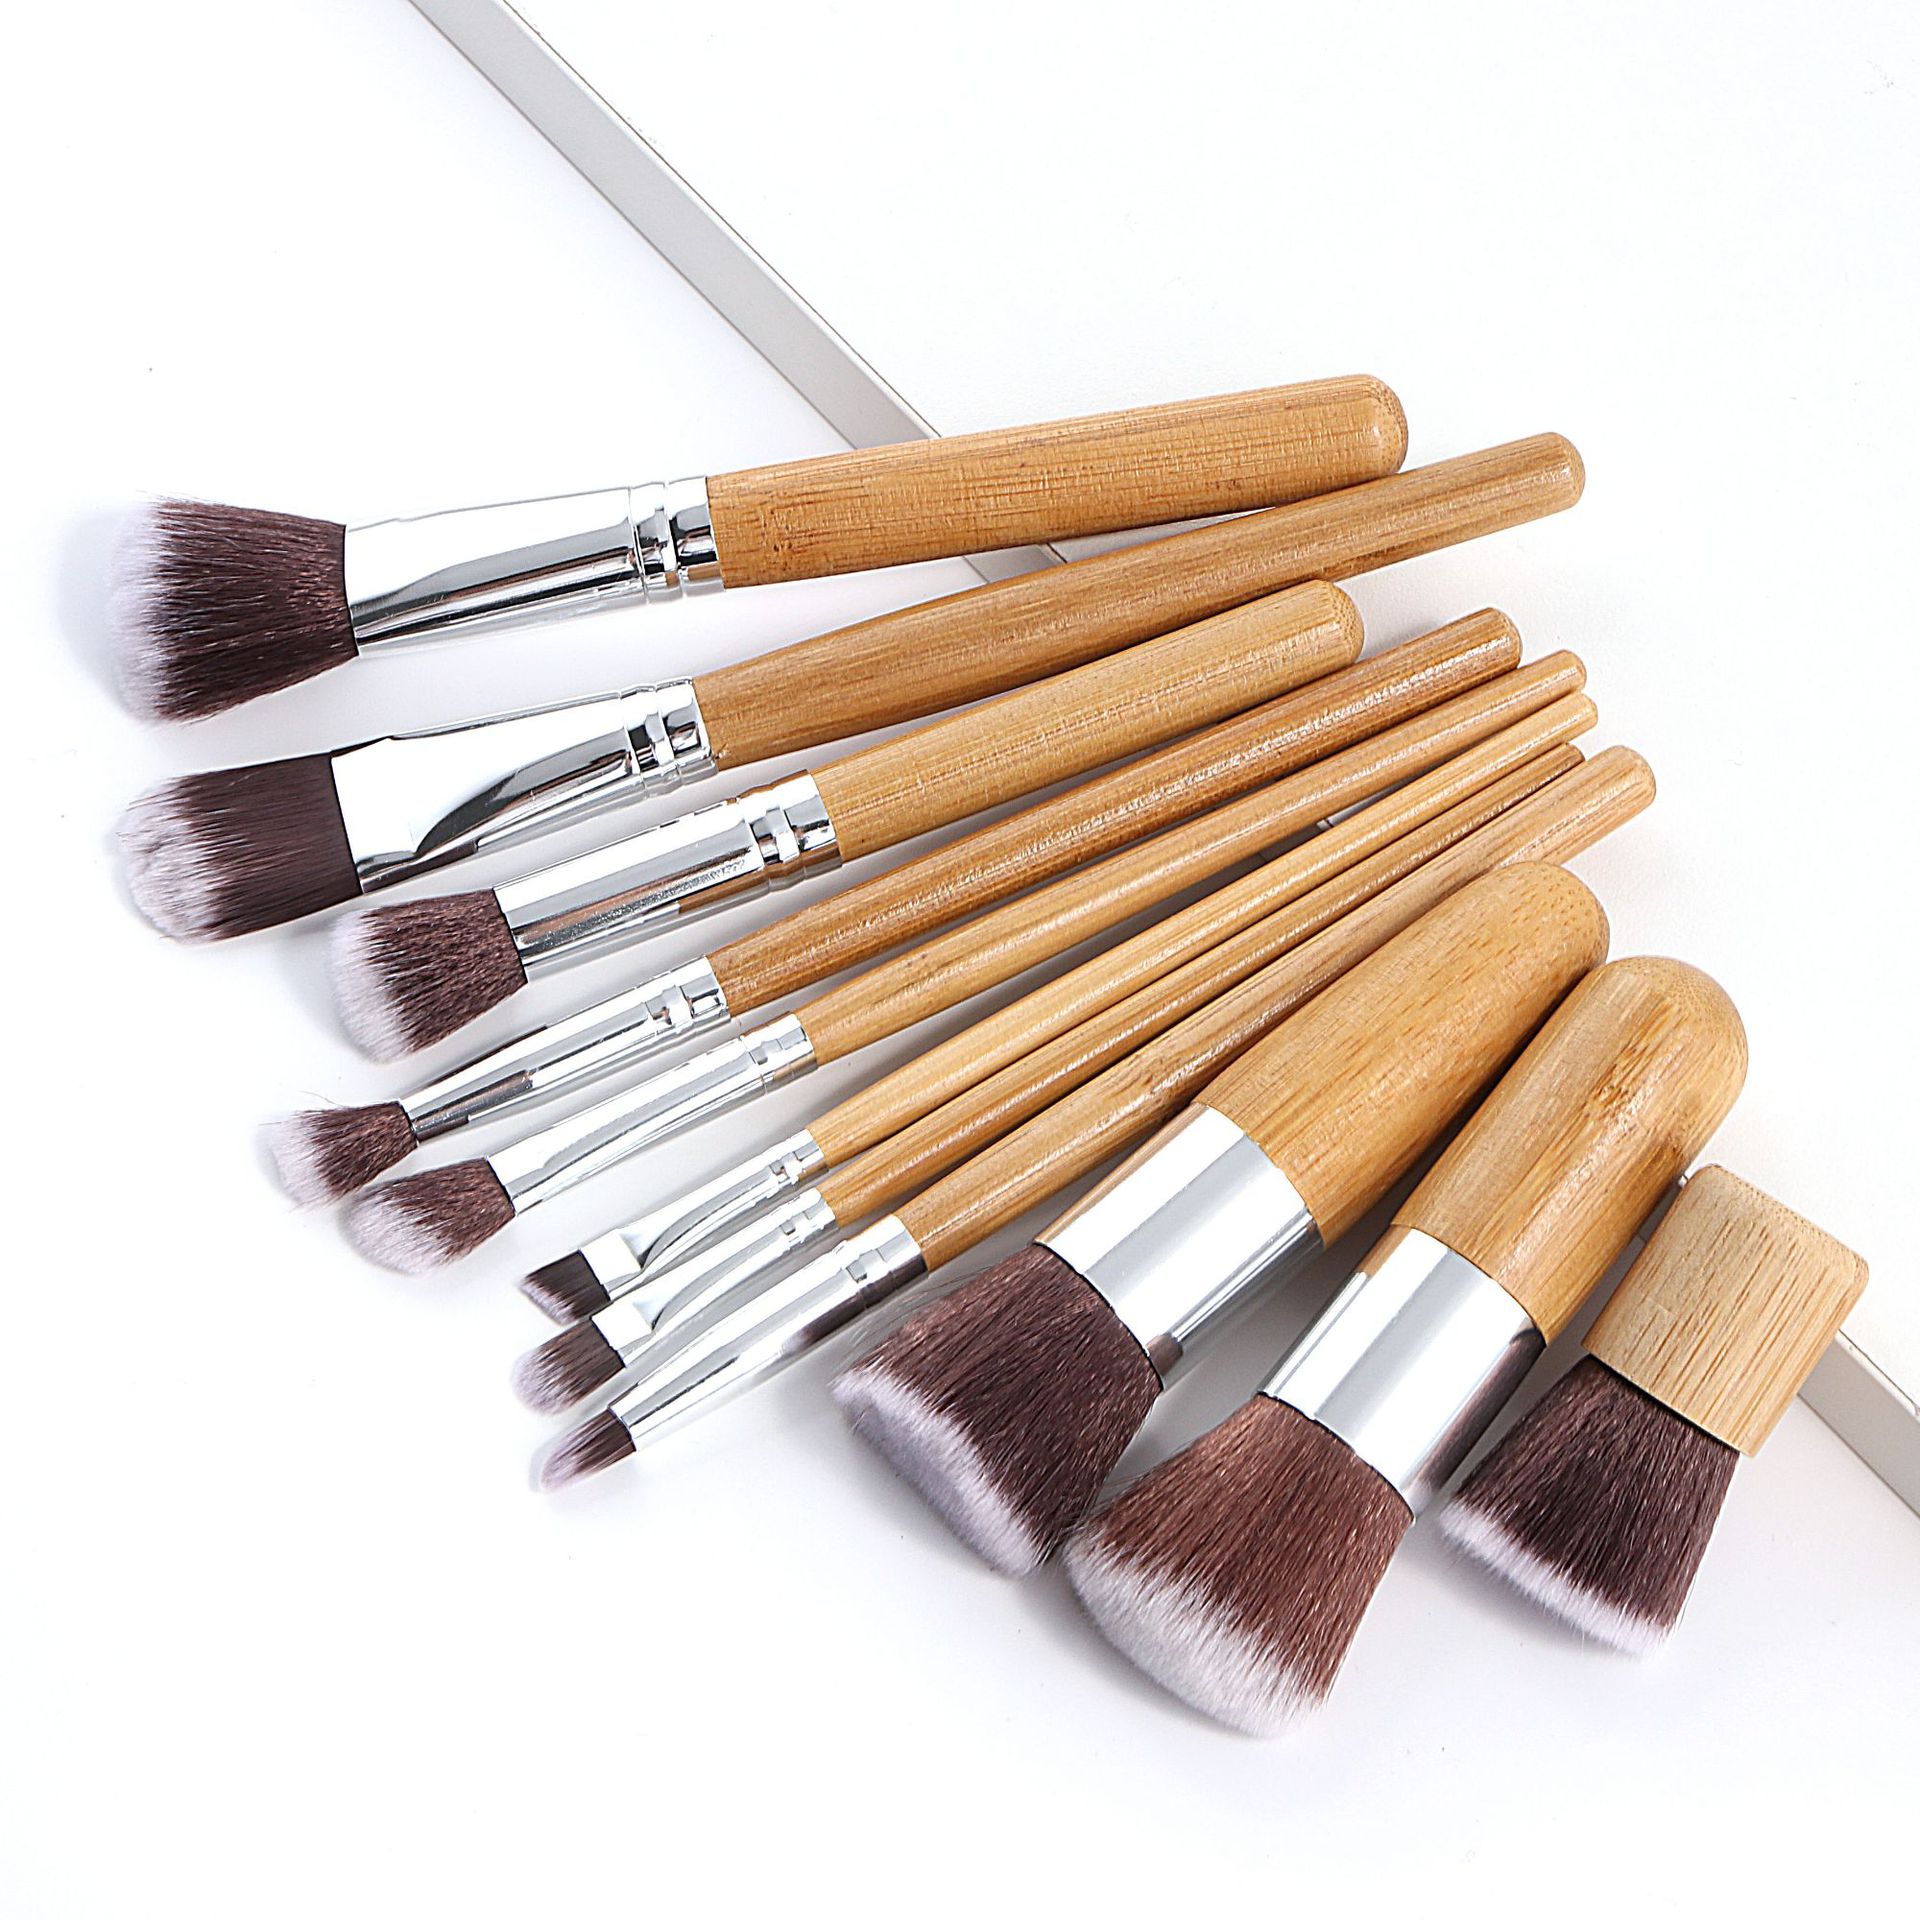 11 stk naturligt bambus håndtag makeup børster sæt foundation blending kosmetisk make-up værktøjssæt med bomuldspose: Uden taske